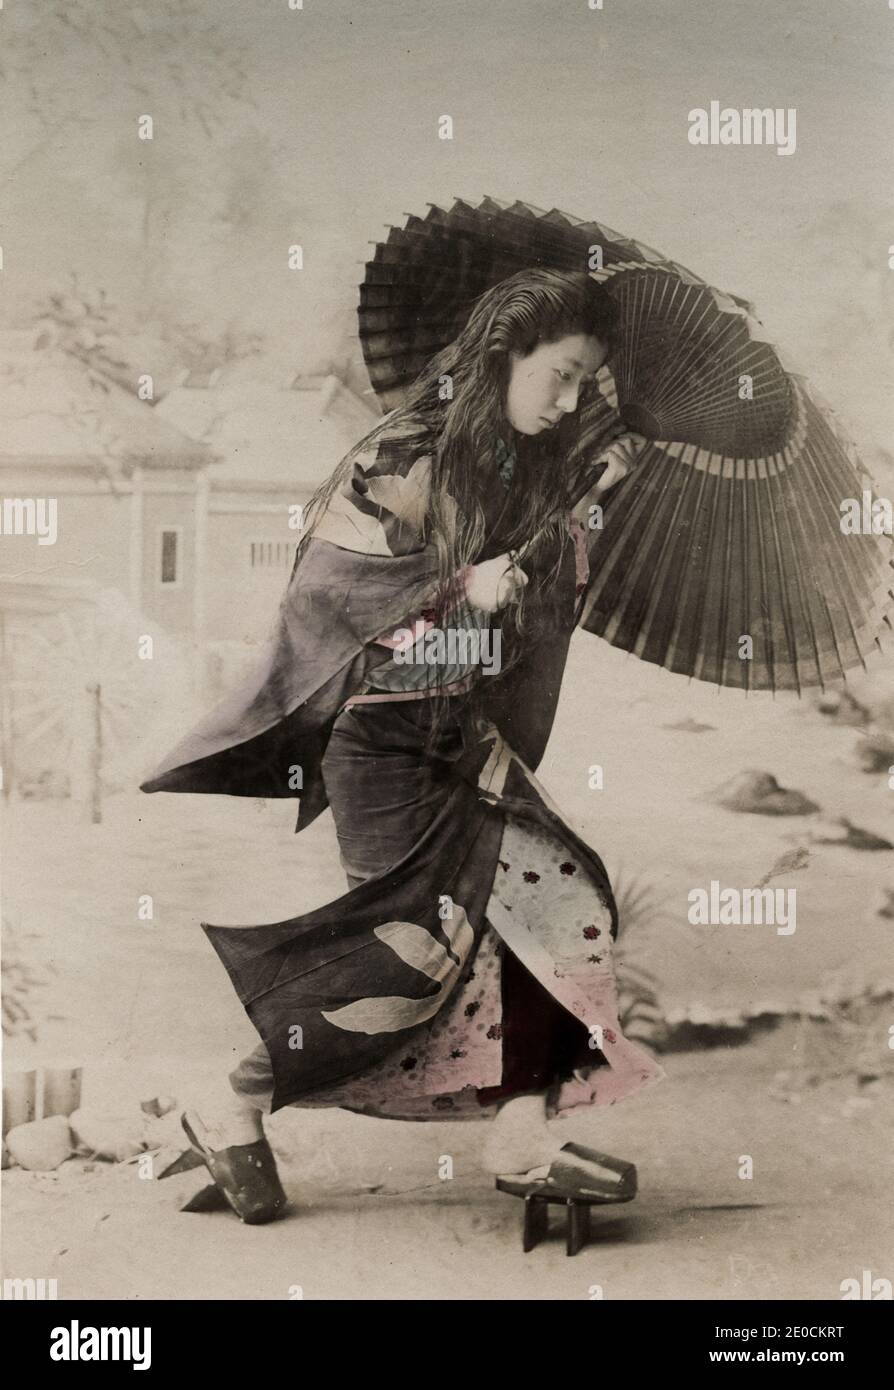 Photographie vintage du XIXe siècle - jeune femme japonaise avec ses cheveux, son parapluie et ses chaussures d'extérieur. Banque D'Images